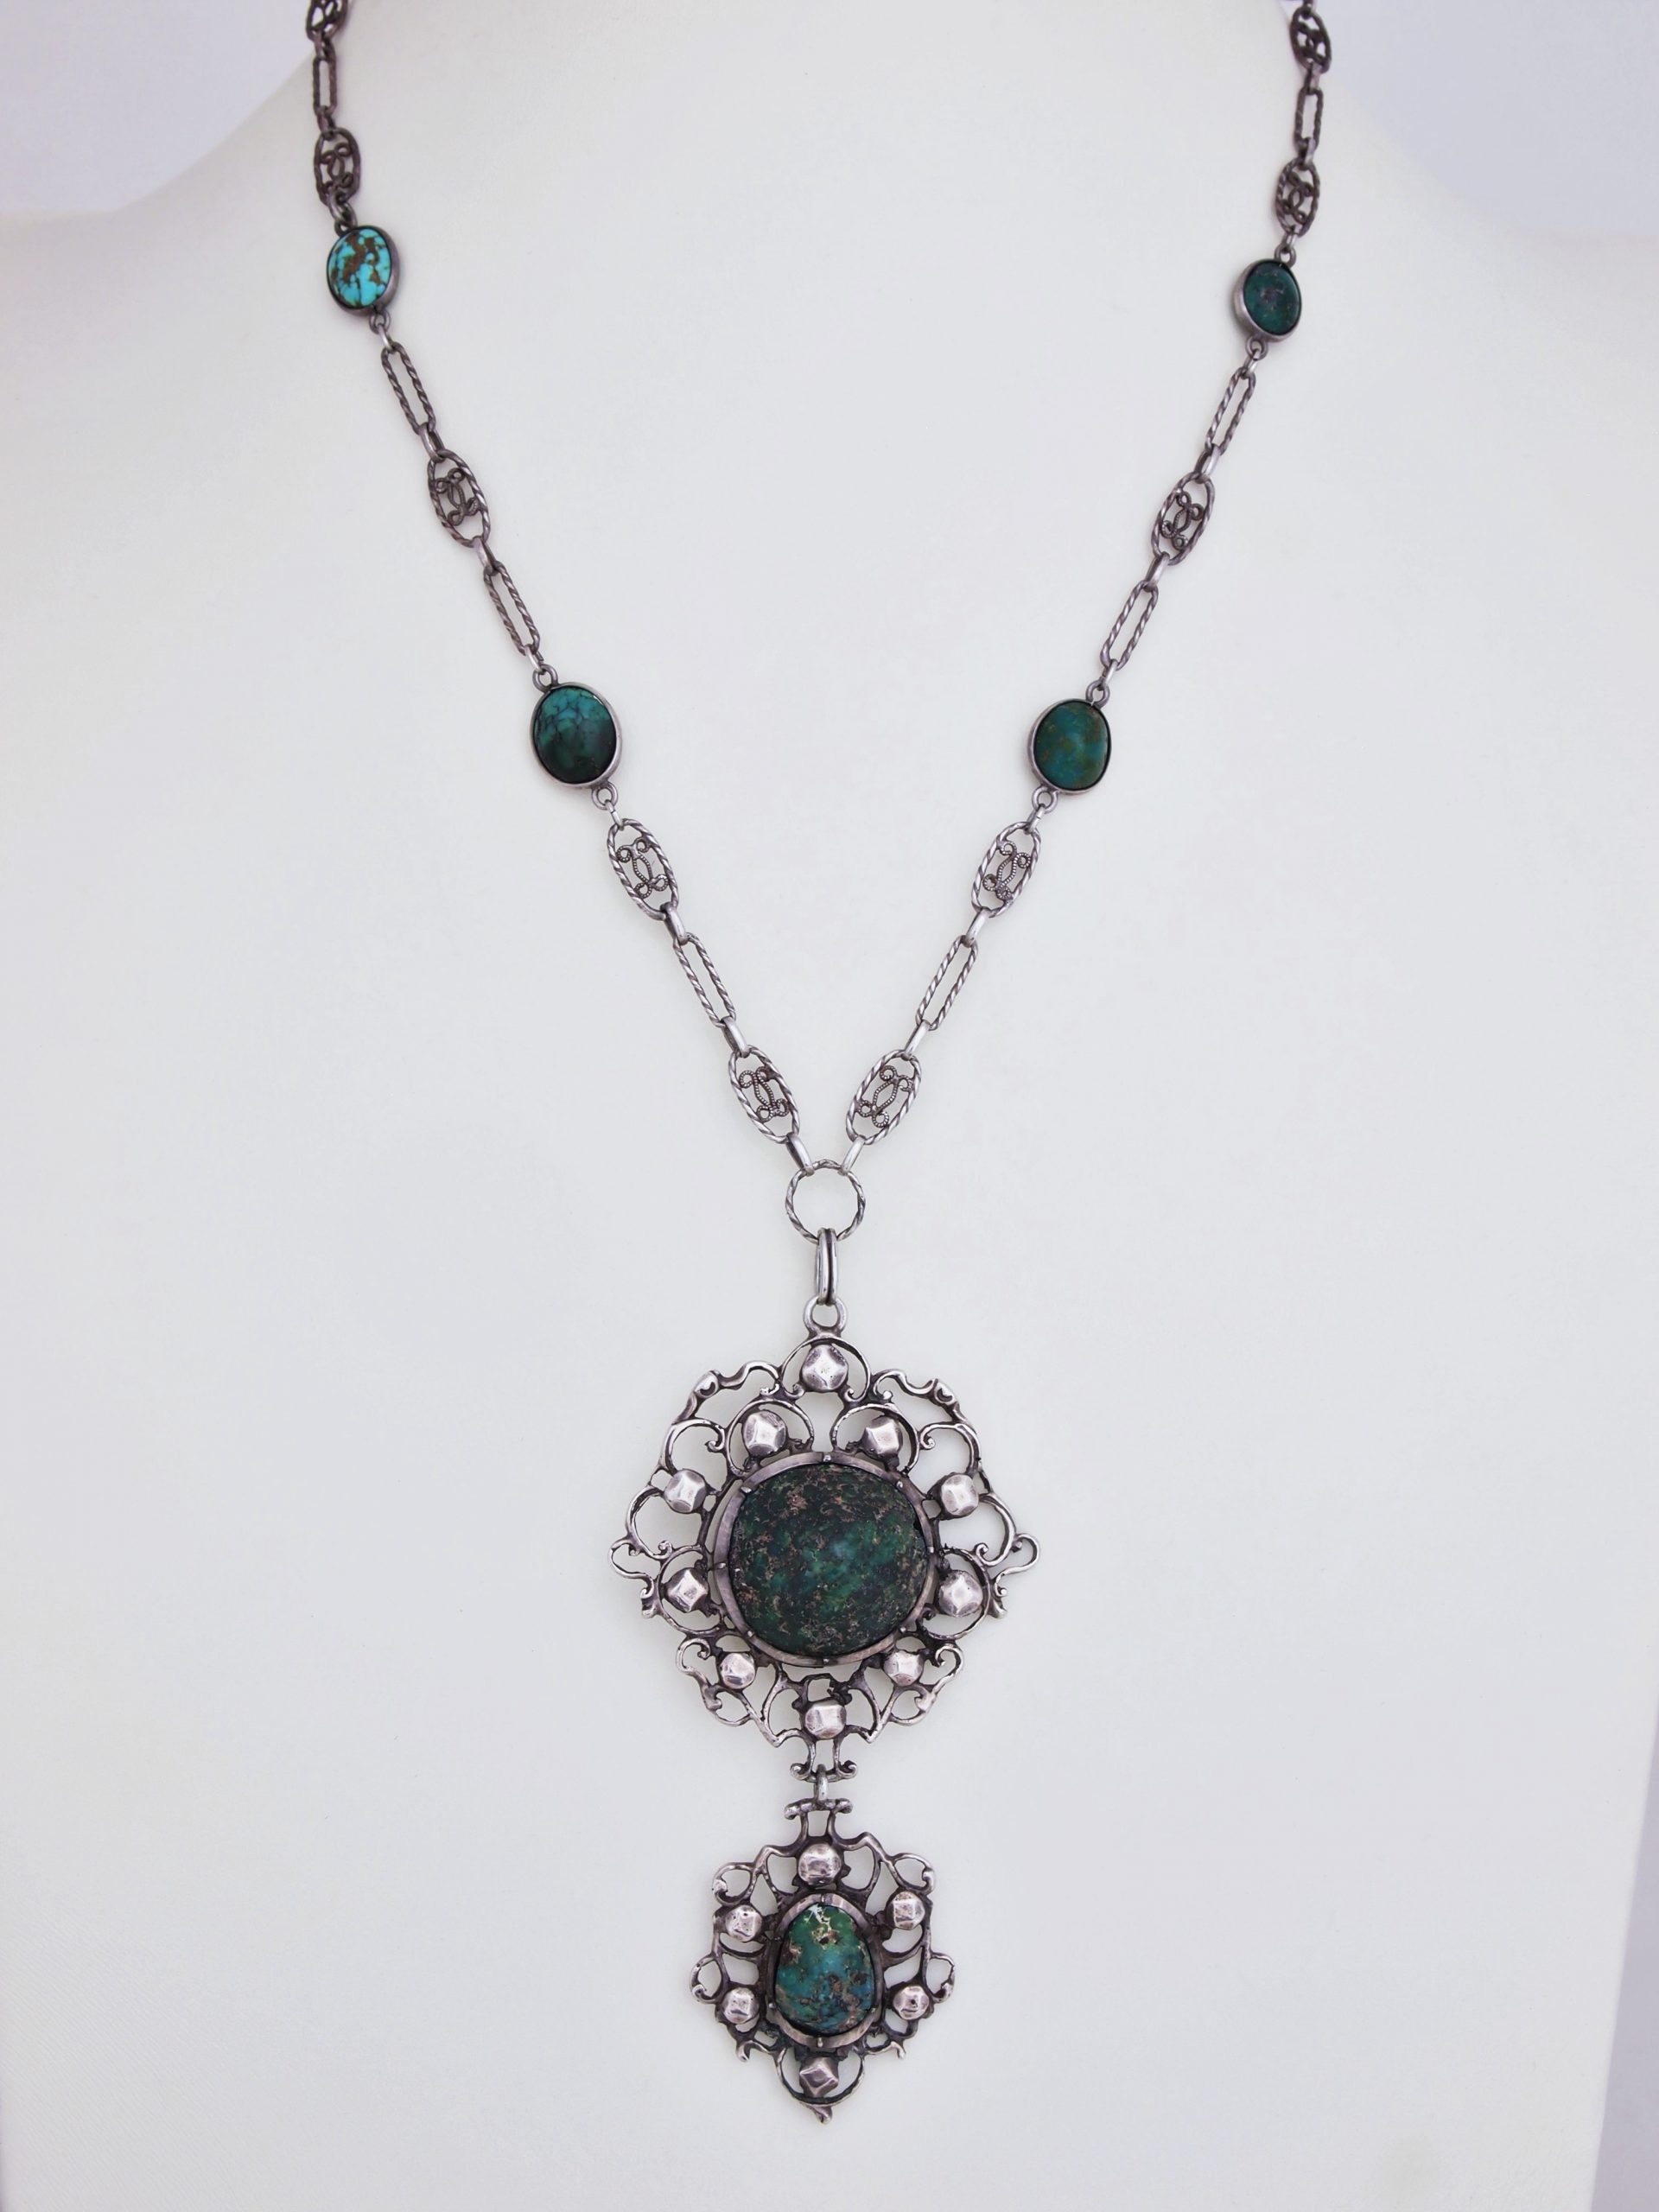 Necklace attr. to Amy Sandheim* - Nouveau Deco Arts